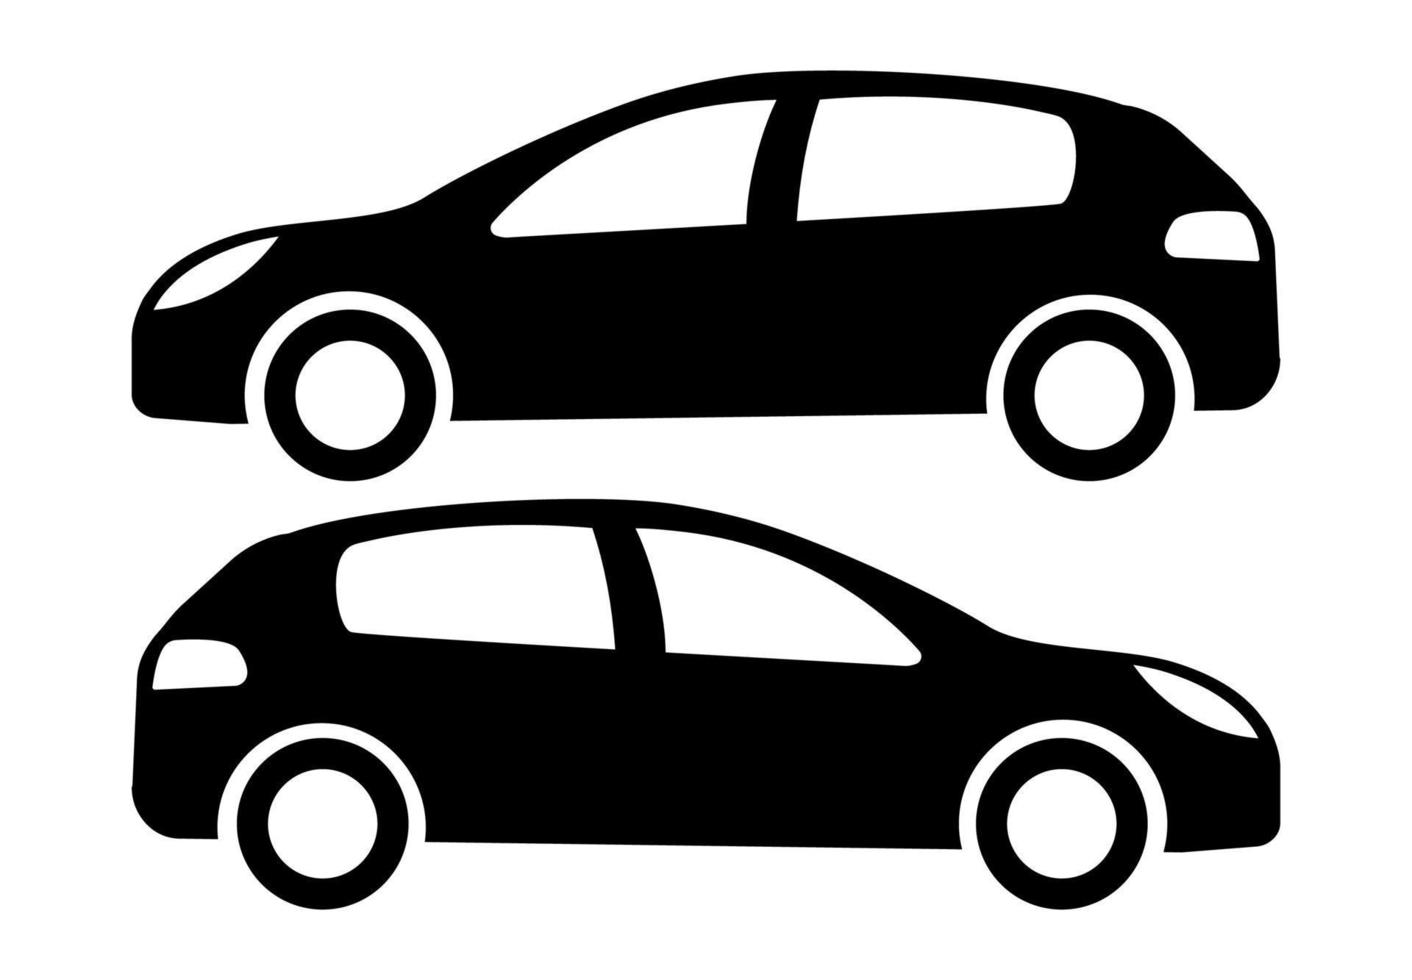 duas silhuetas de carro preto sobre um fundo branco. ilustração vetorial. vetor